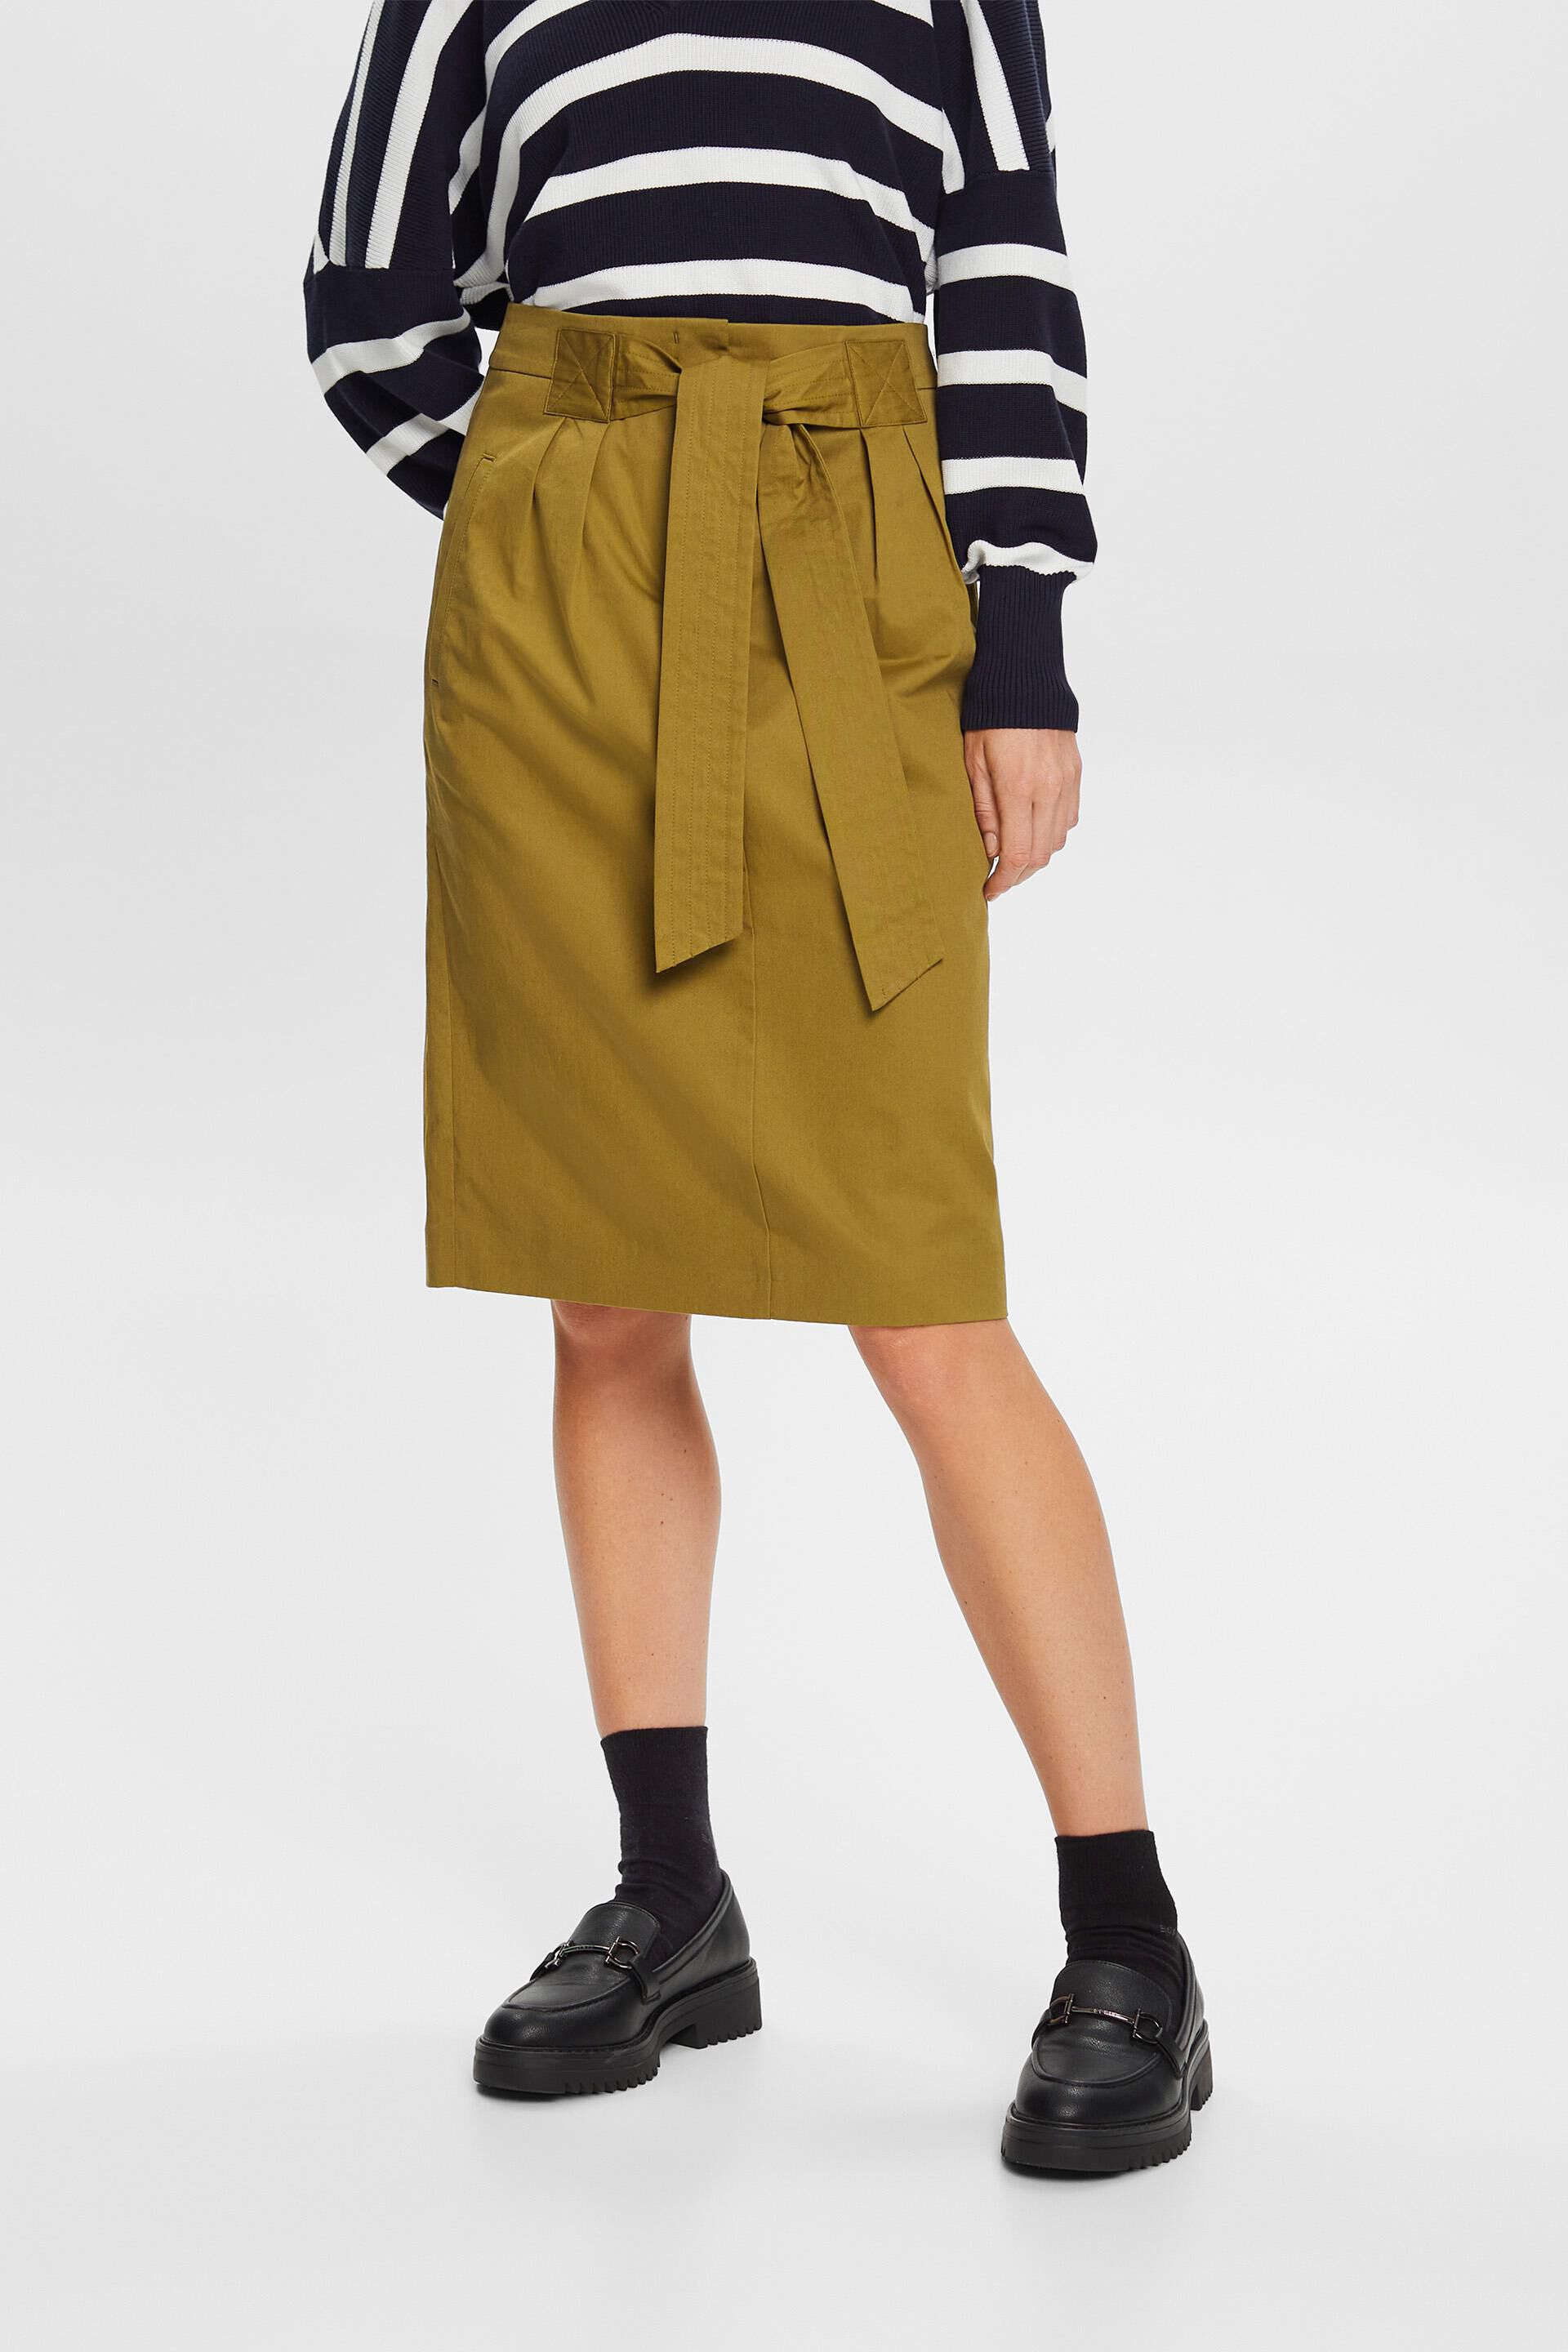 Esprit Damen Belted knee length skirt, 100% cotton